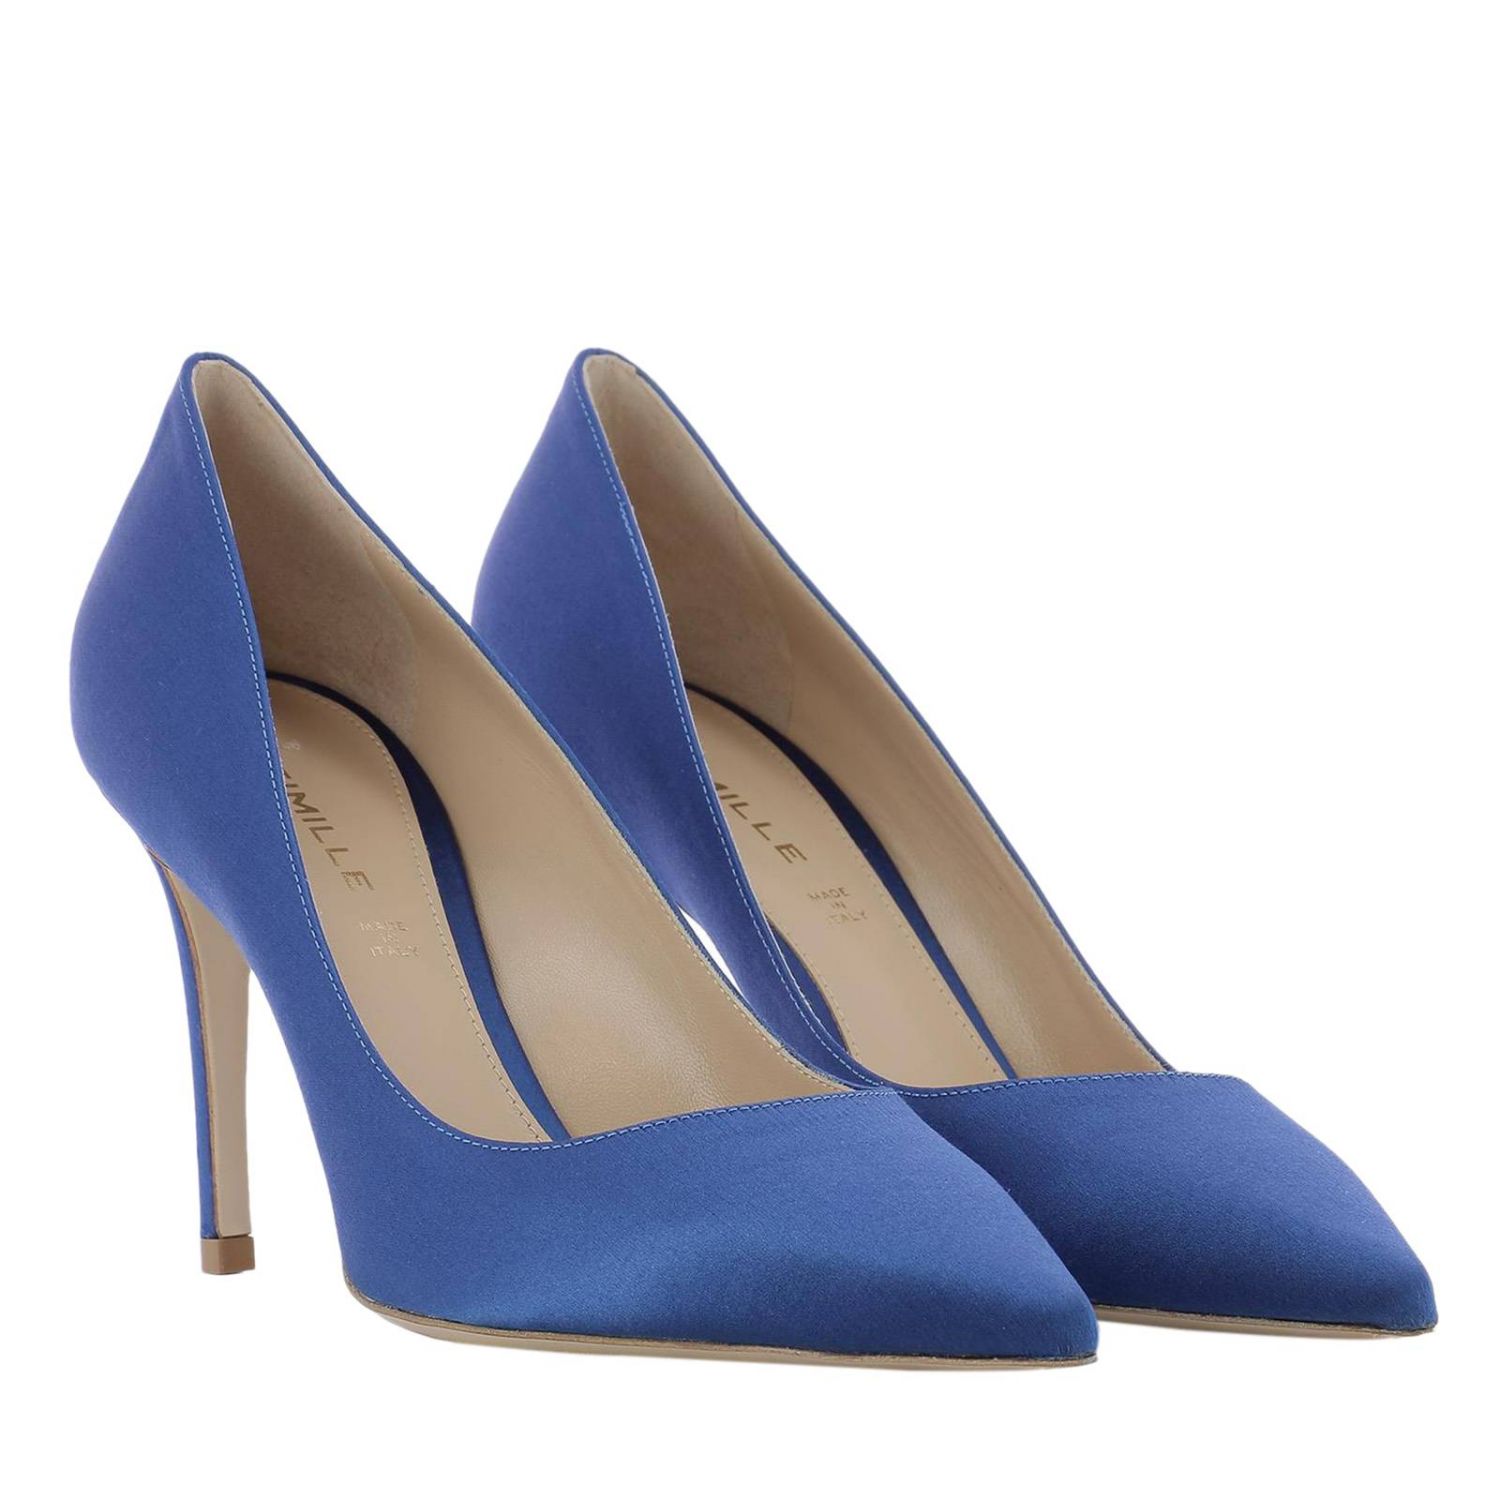 DEIMILLE: High heel shoes women | High Heel Shoes Deimille Women Blue ...